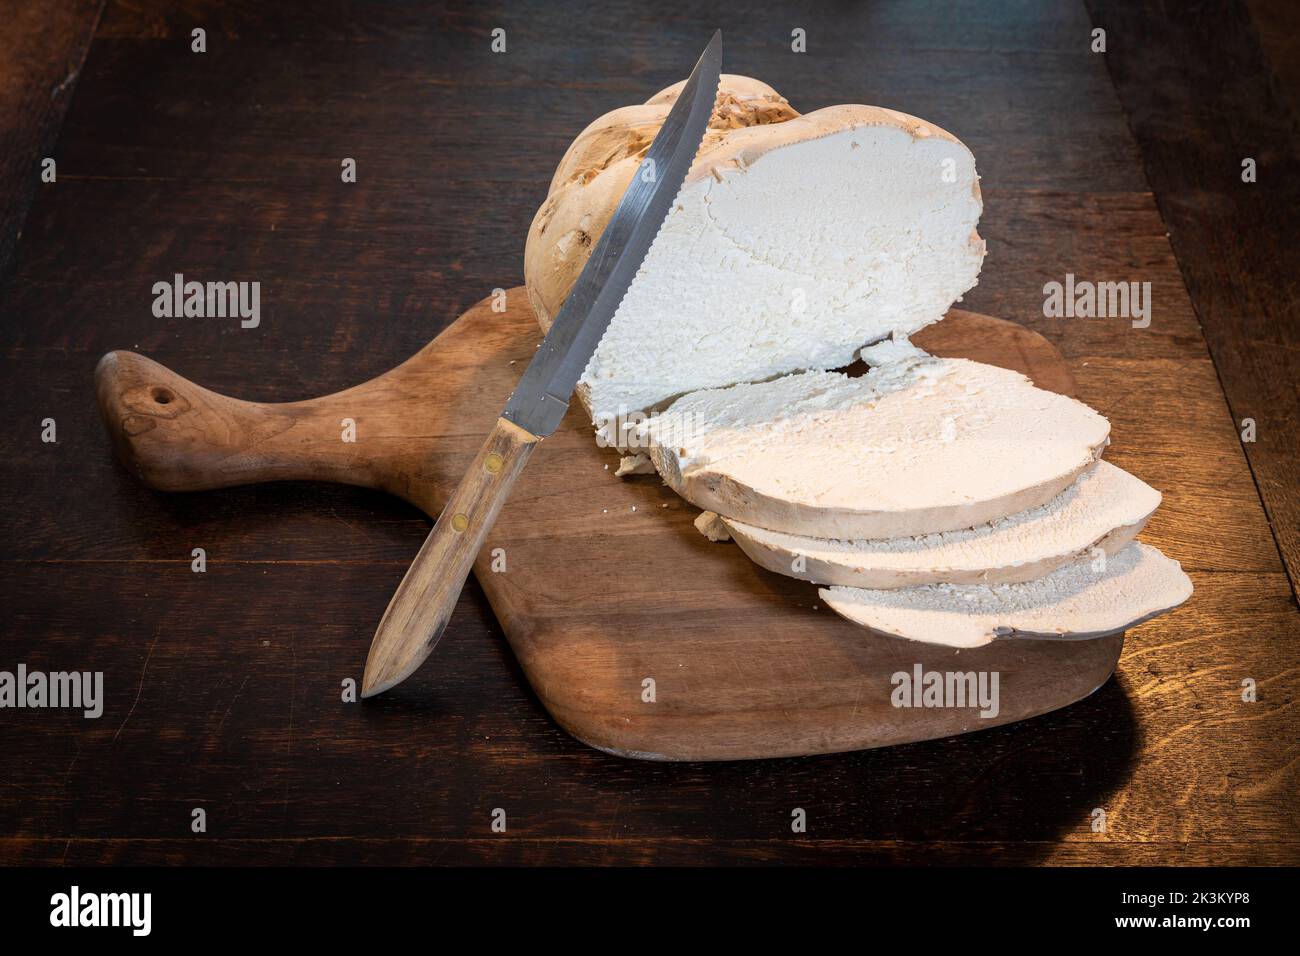 Palla gigante tagliata in cucina, gustosi funghi commestibili pronti per essere fritti Foto Stock